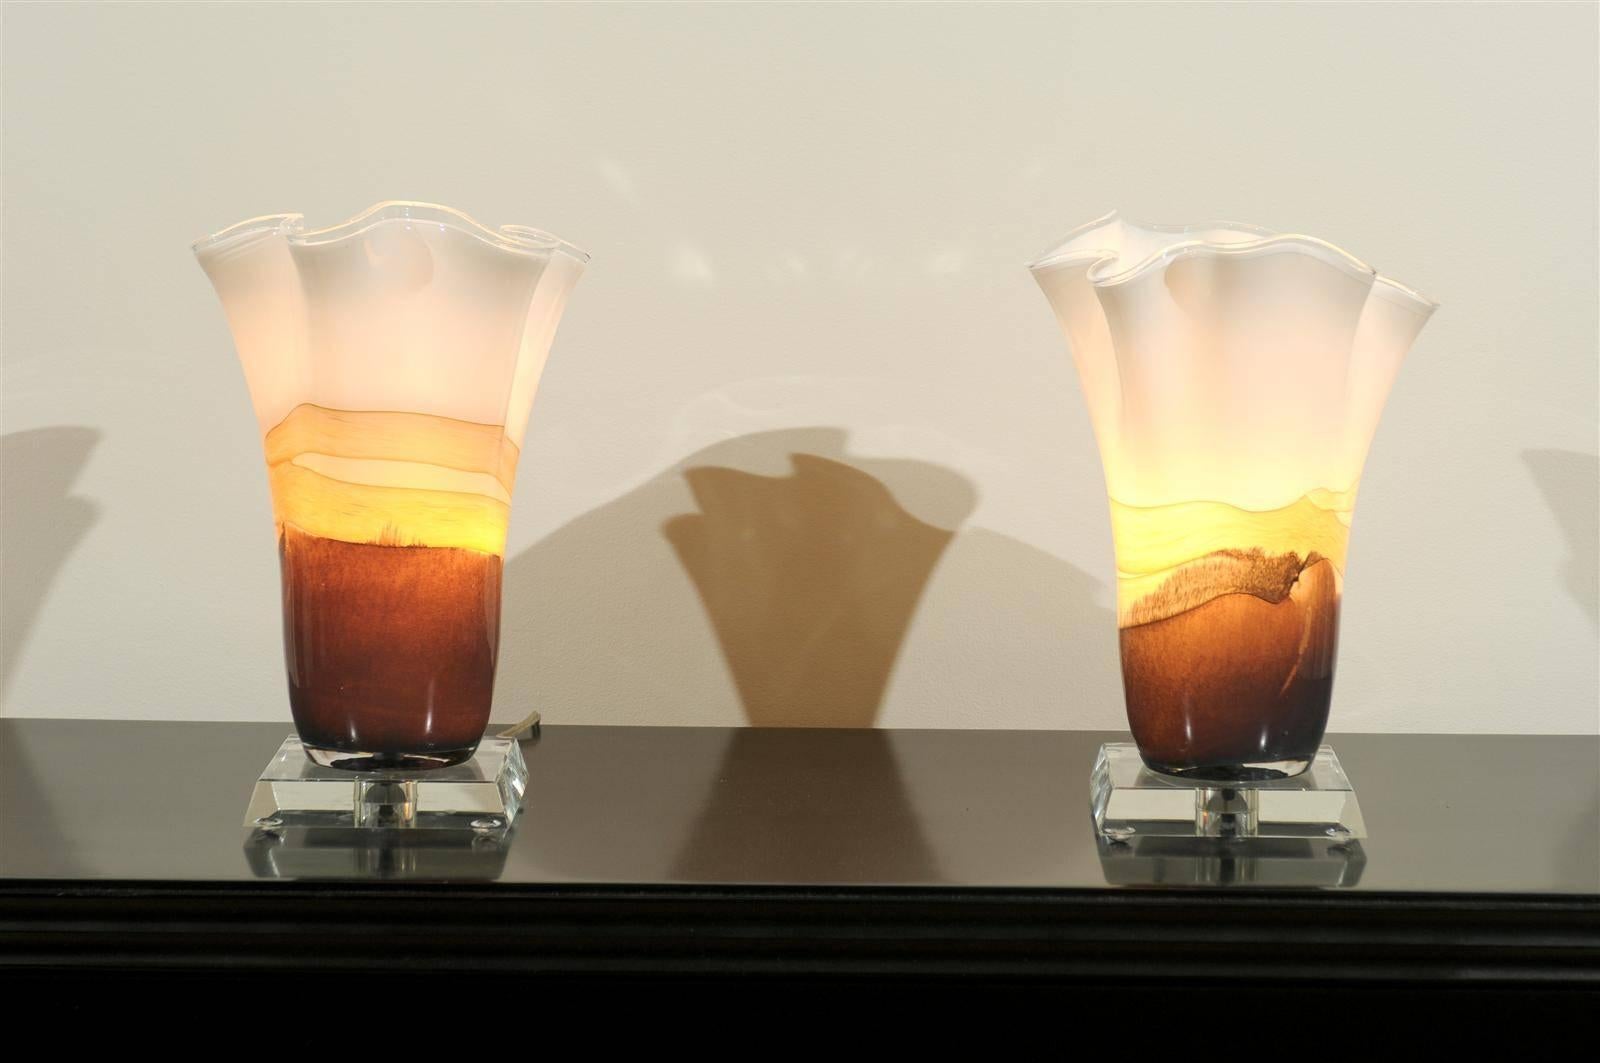 Une paire sensationnelle de récipients en verre soufflé servant de torchères de table. Belle forme organique exécutée en crème et en nuances de caramel. Ces exemples sont cohérents avec la production de verre d'art d'Europe de l'Est des années 1990.